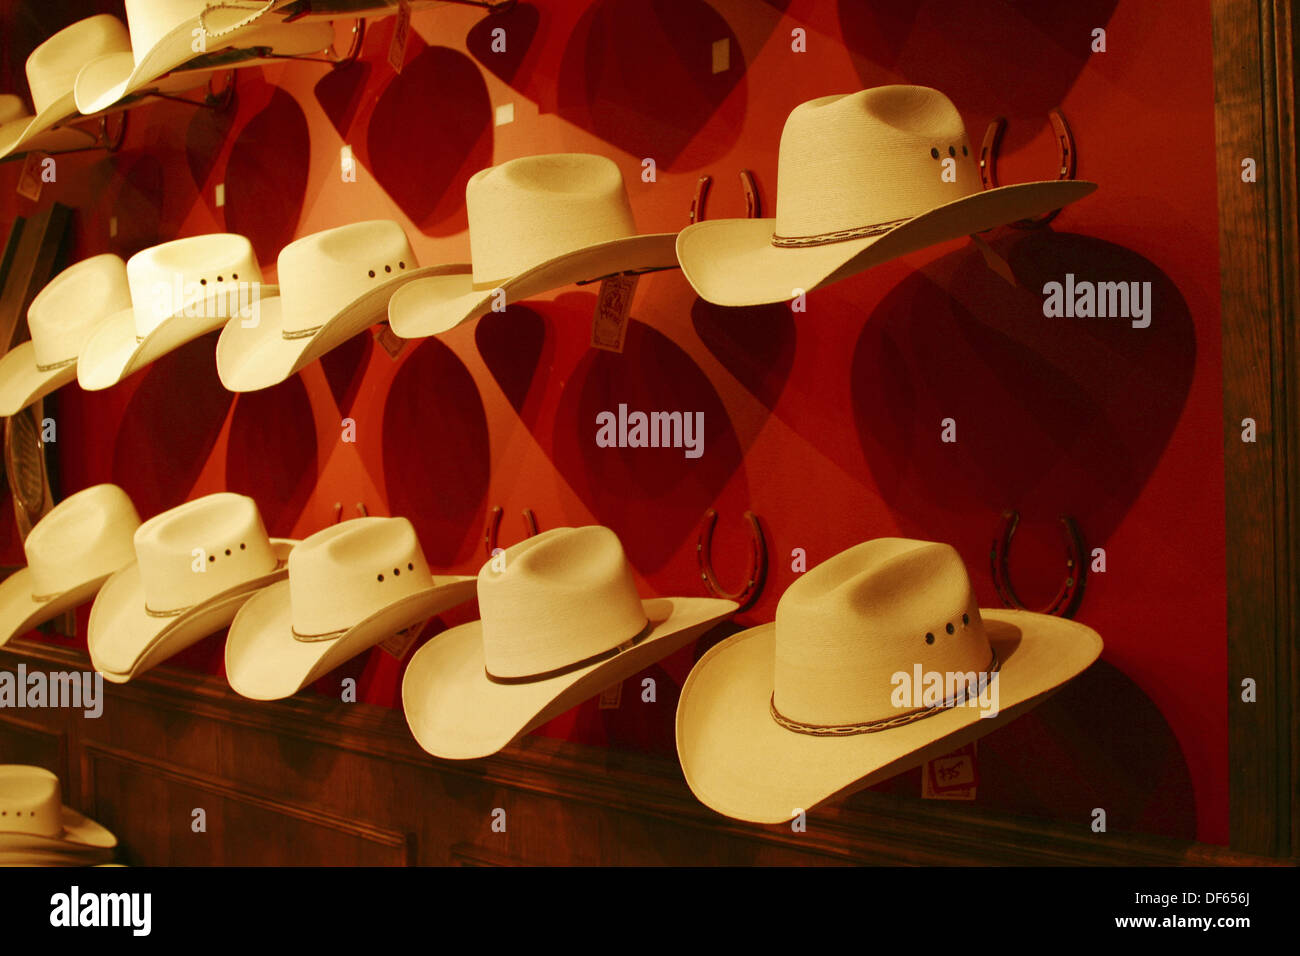 Anzeige von Stroh Stetson Cowboyhüte in einem Western speichern in Dallas,  Texas Stockfotografie - Alamy